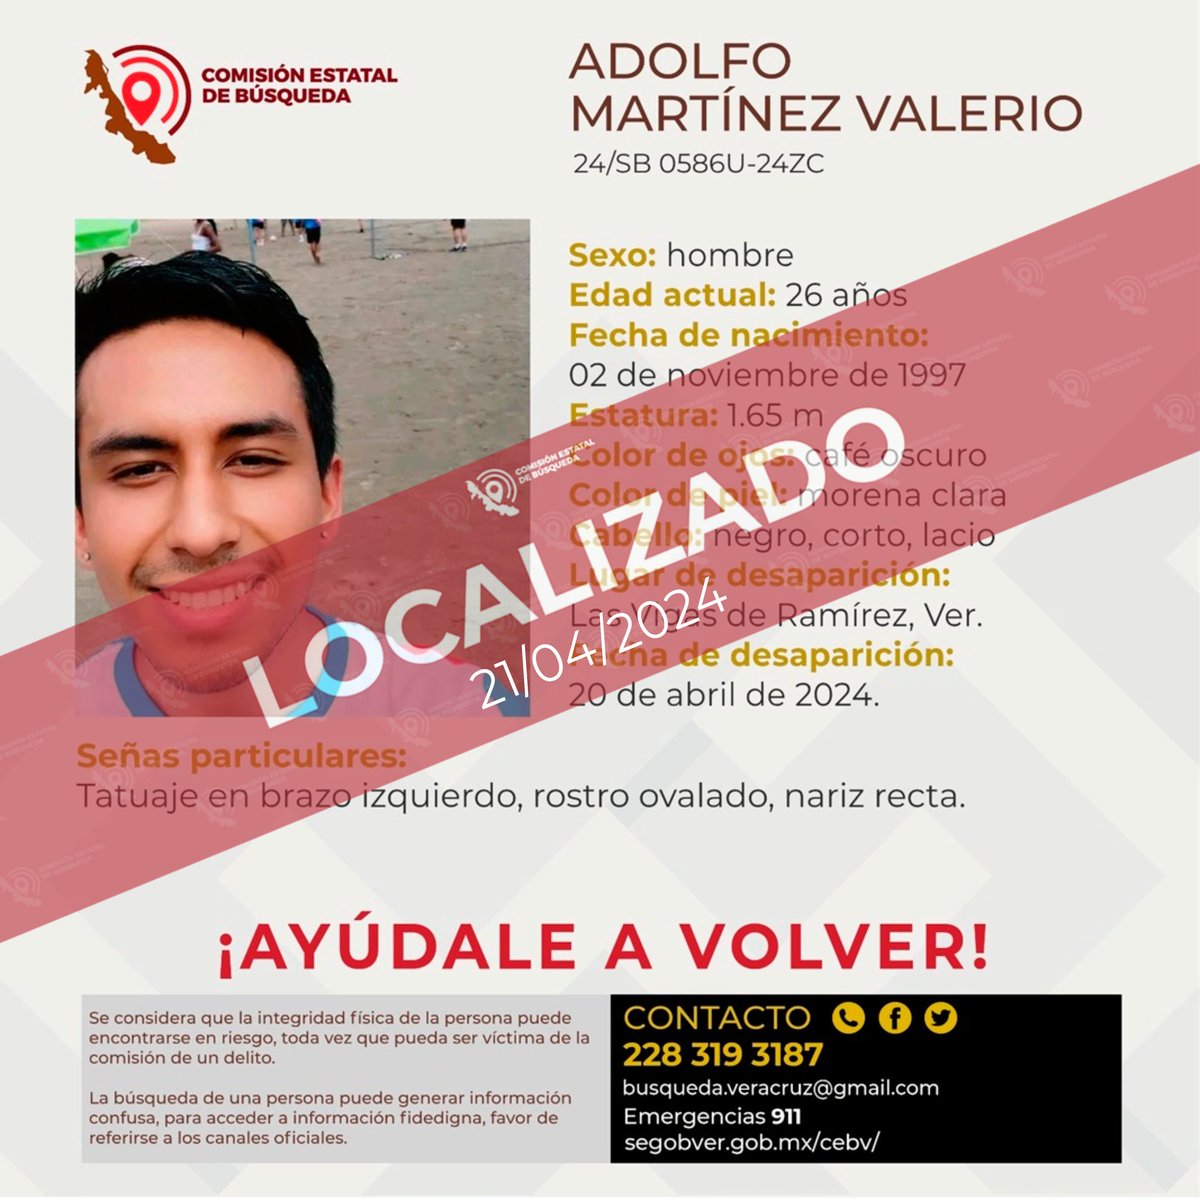 Agradecemos su colaboración por la localización del C. Adolfo Martínez Valerio. #lasvigas #perote #Xalapa
@botDesaparecidx